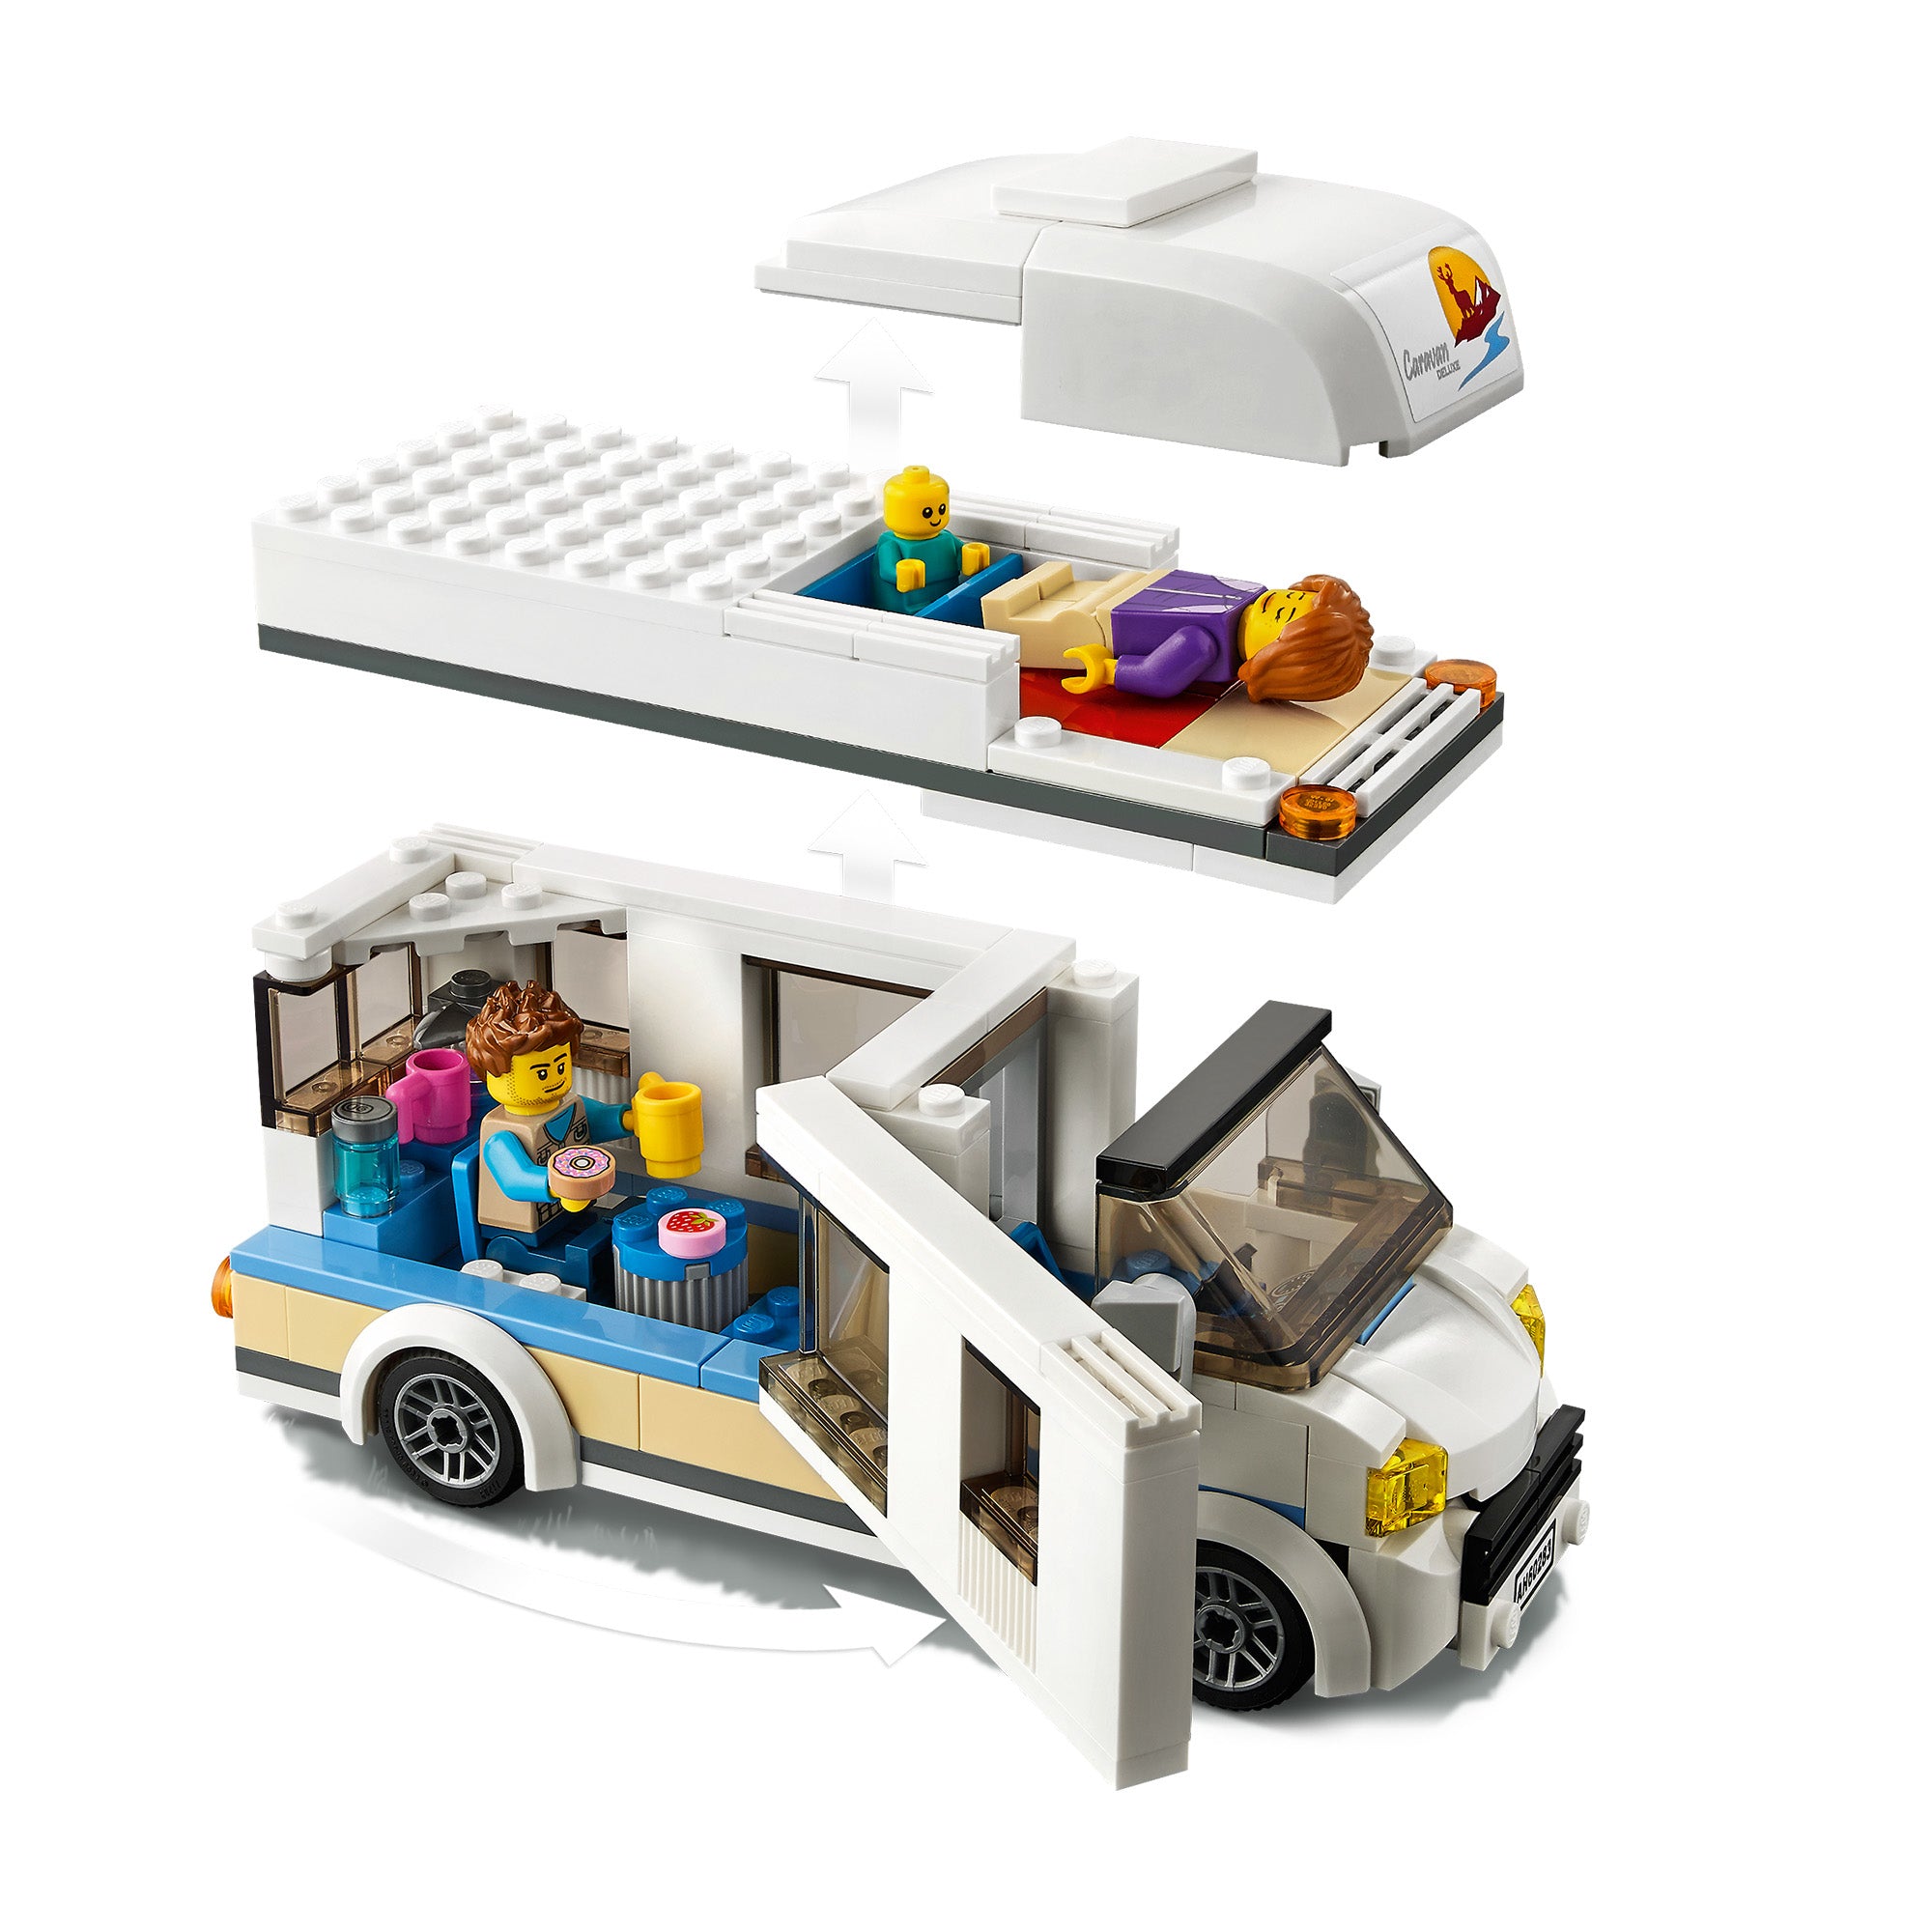 60283 LEGO® City - Camper delle vacanze